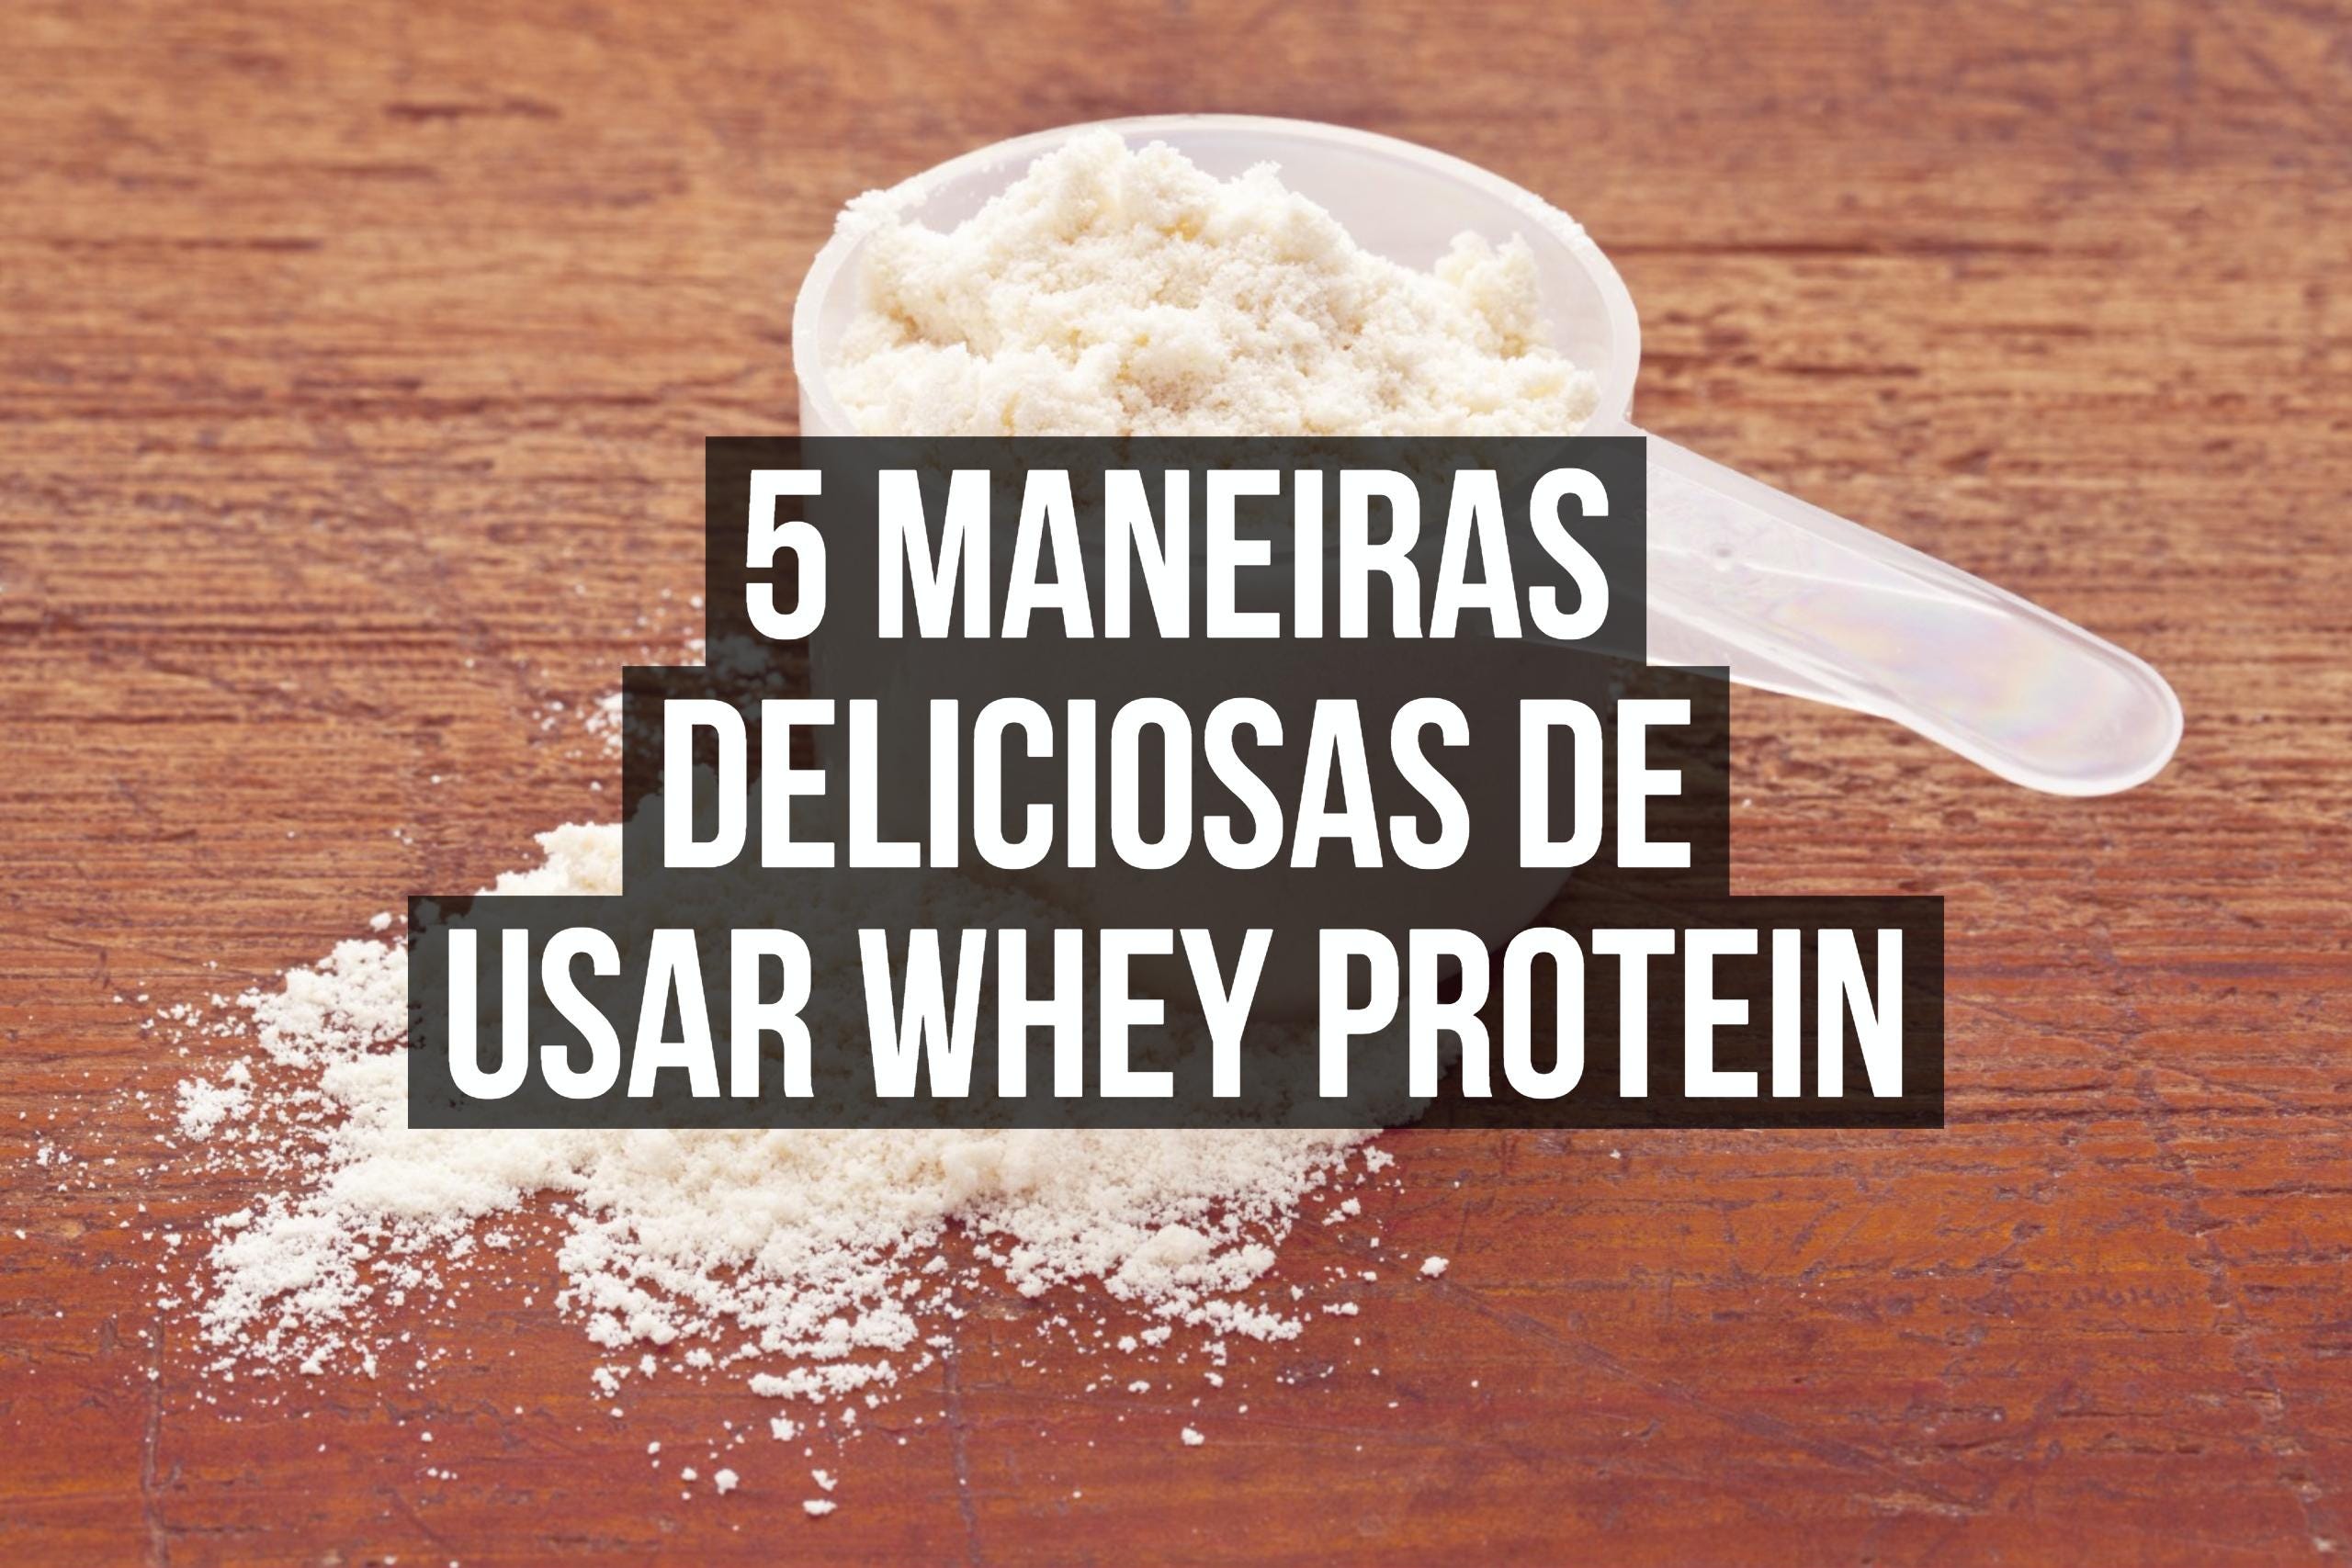 5 maneiras deliciosas de usar Whey Protein | by AlfaClub | AlfaClub